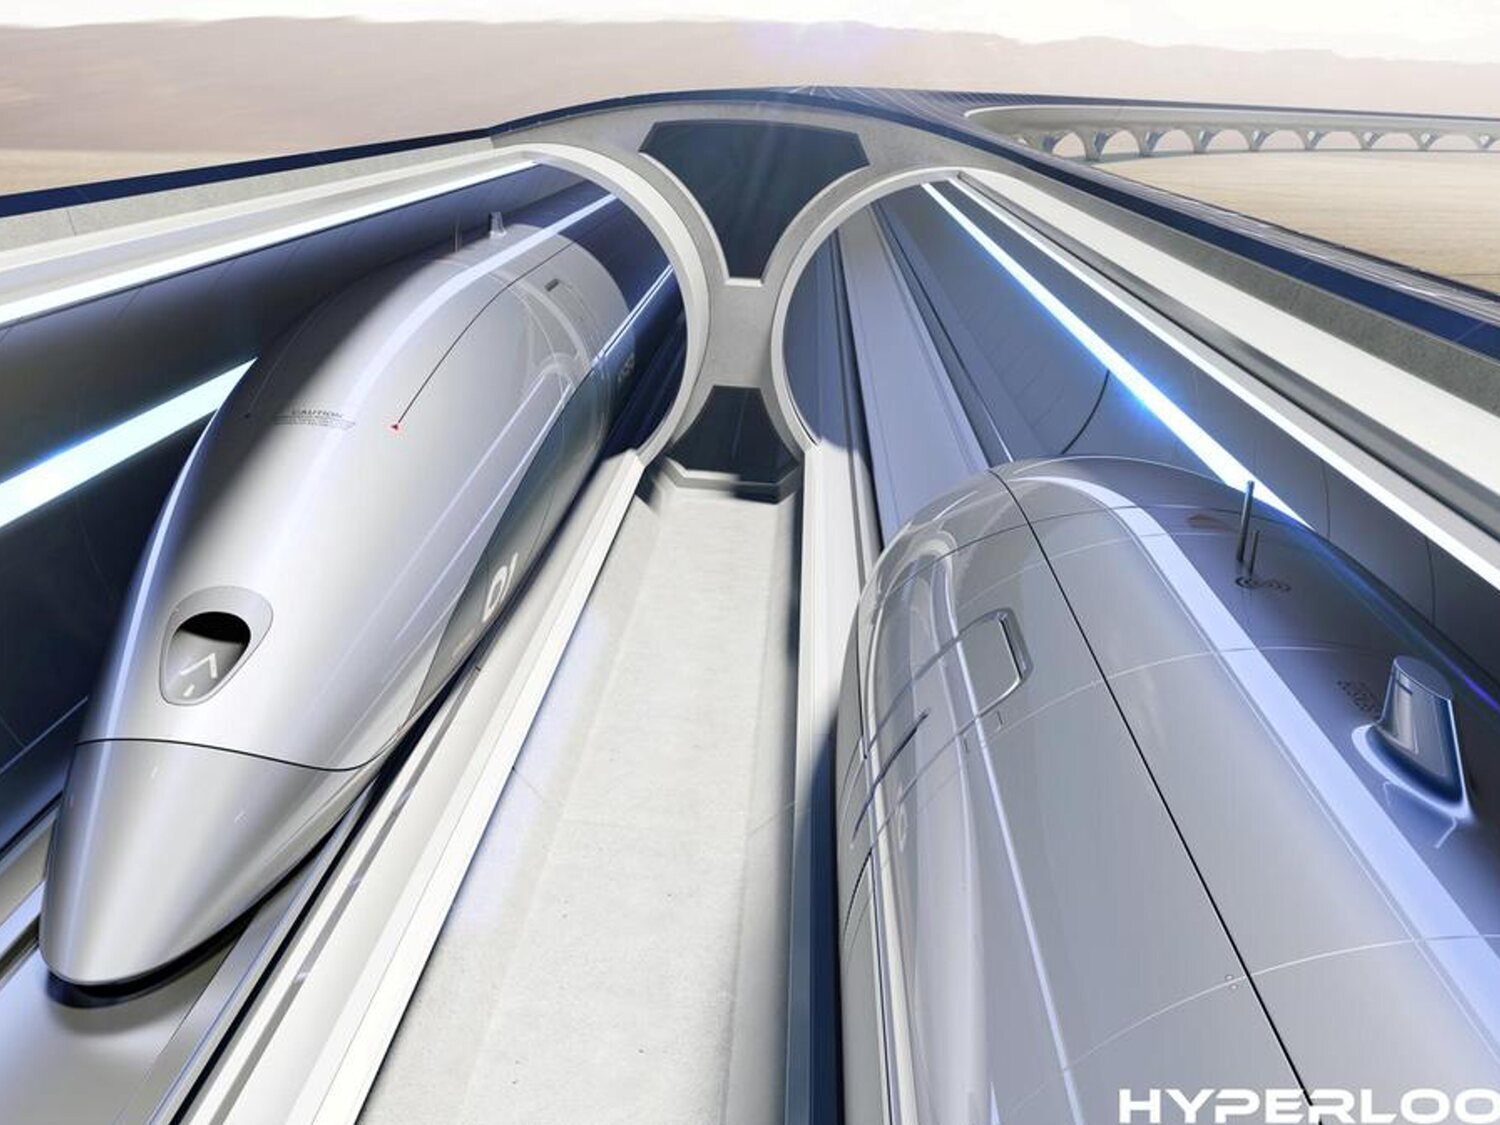 Así es HyperLoop, el tren del futuro que conectará Madrid y Barcelona en media hora